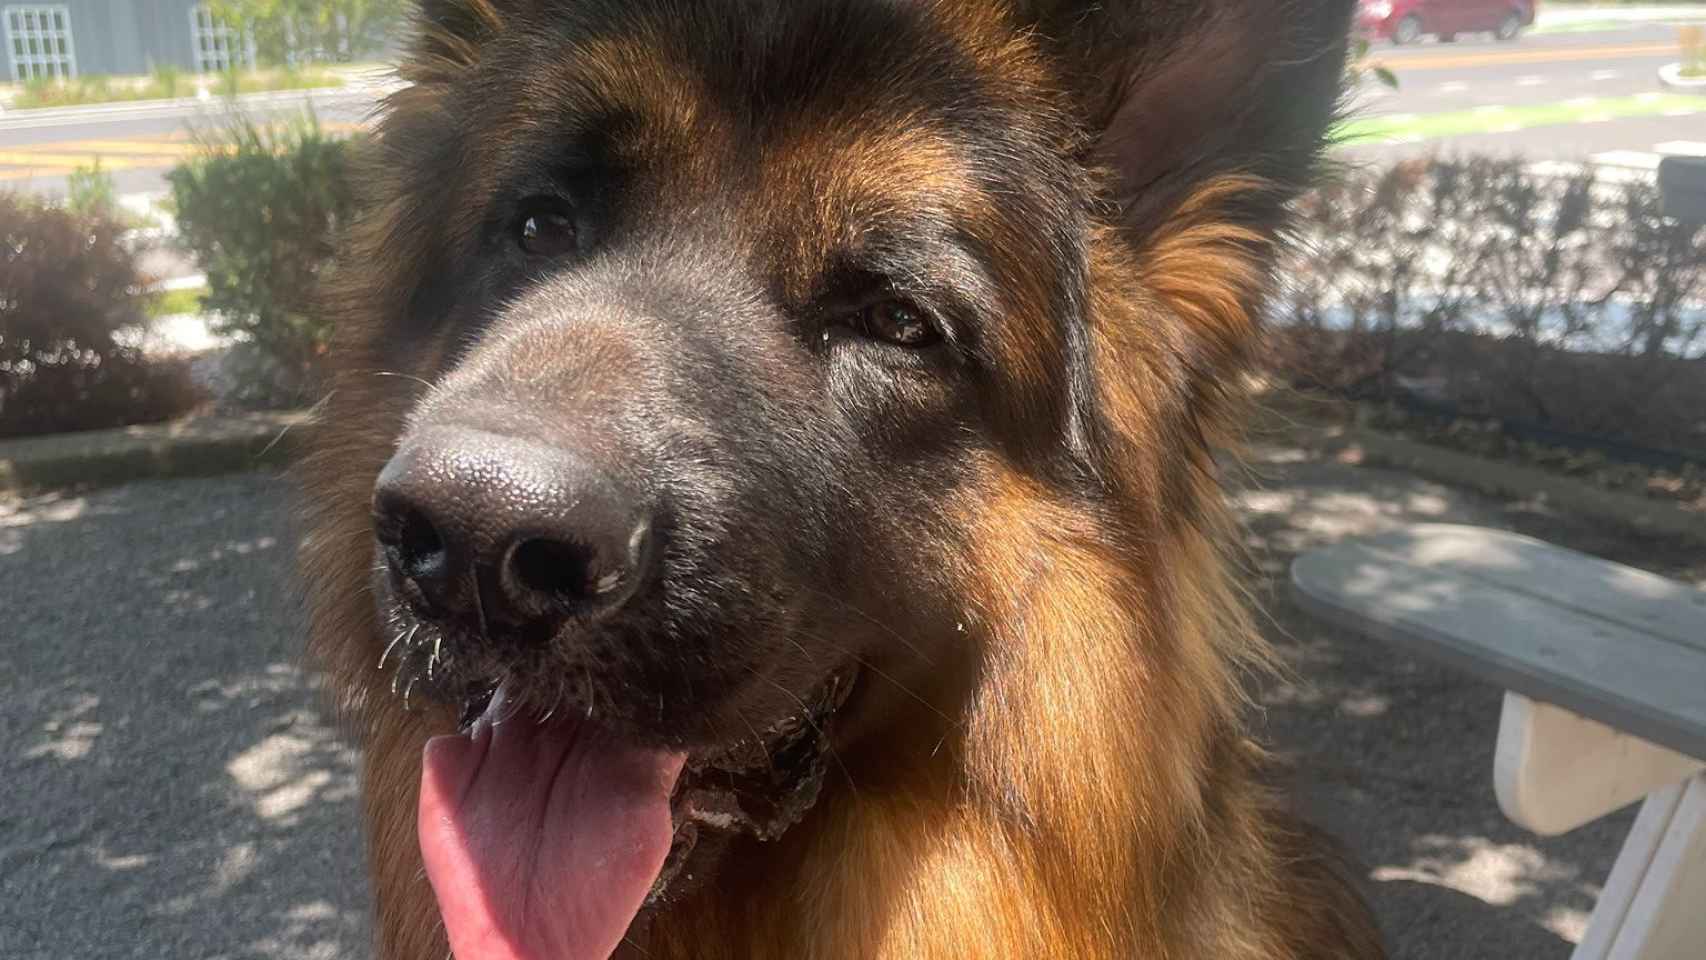 Judge, el perro de la huésped obligada a pagar un extra en Airbnb por dejar pelos de su mascota.